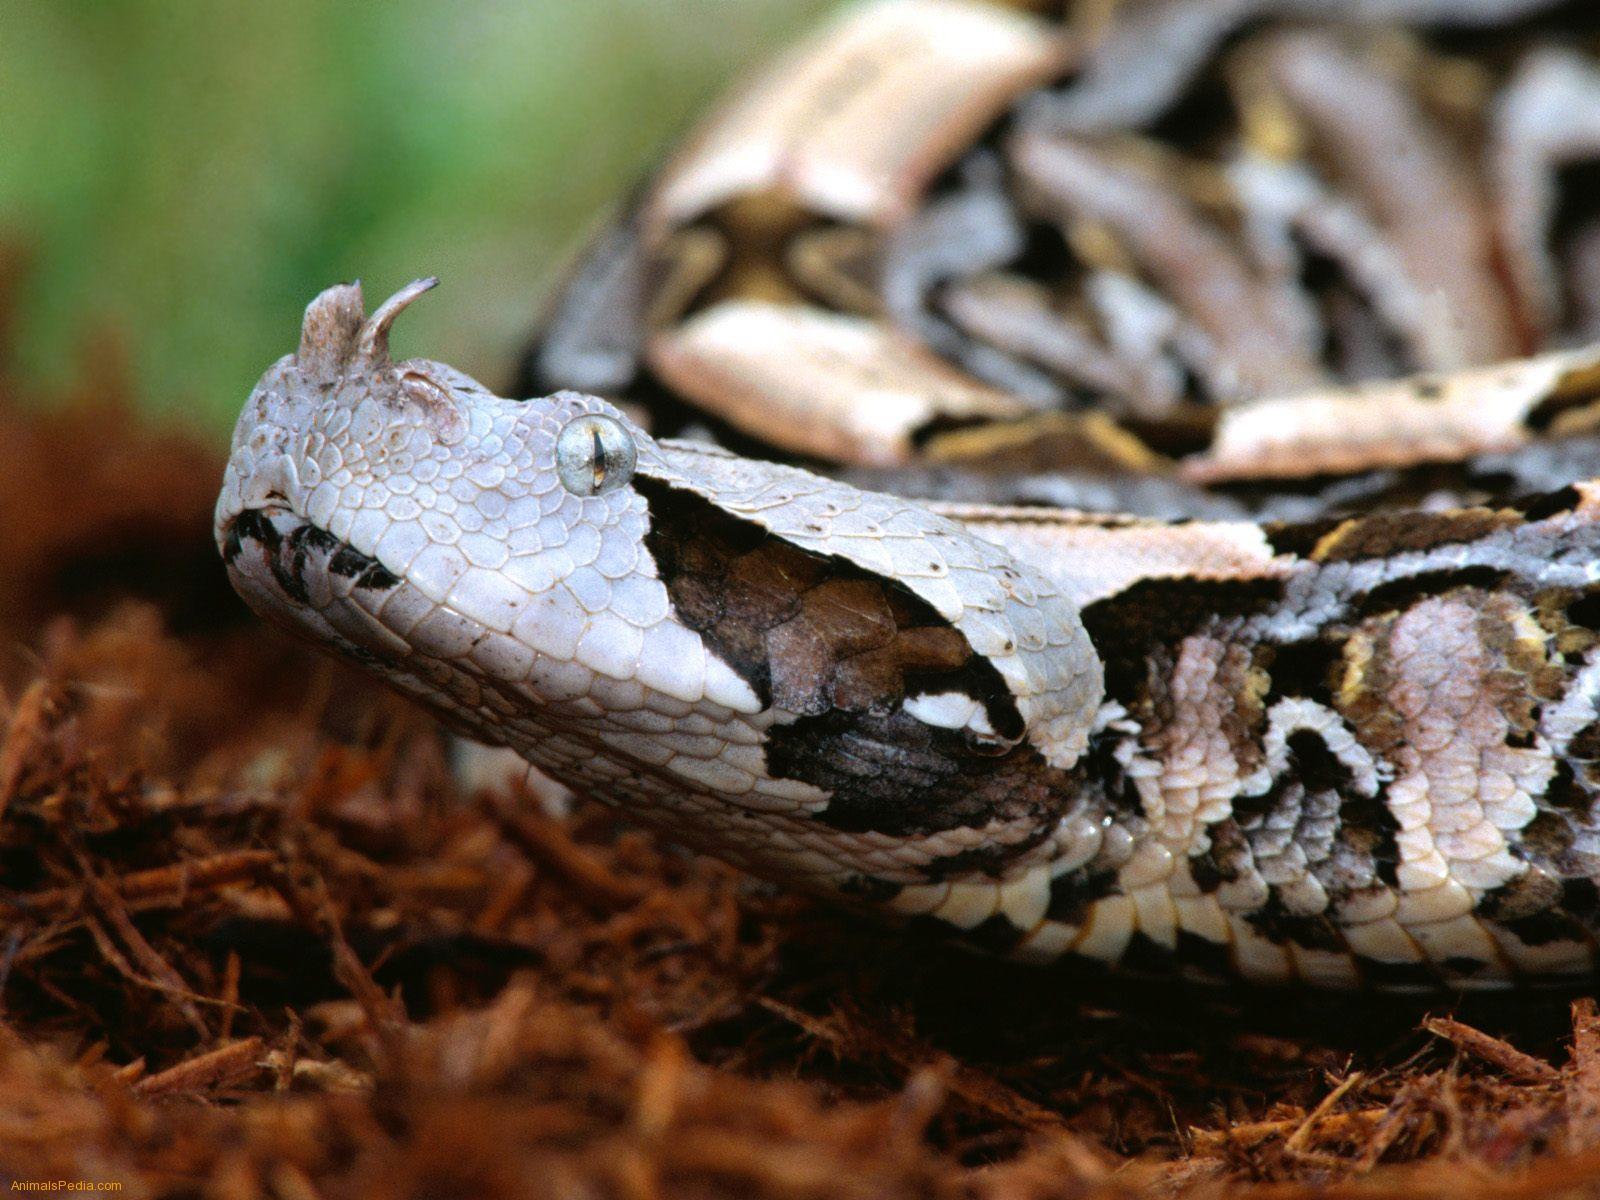 Viper Snake